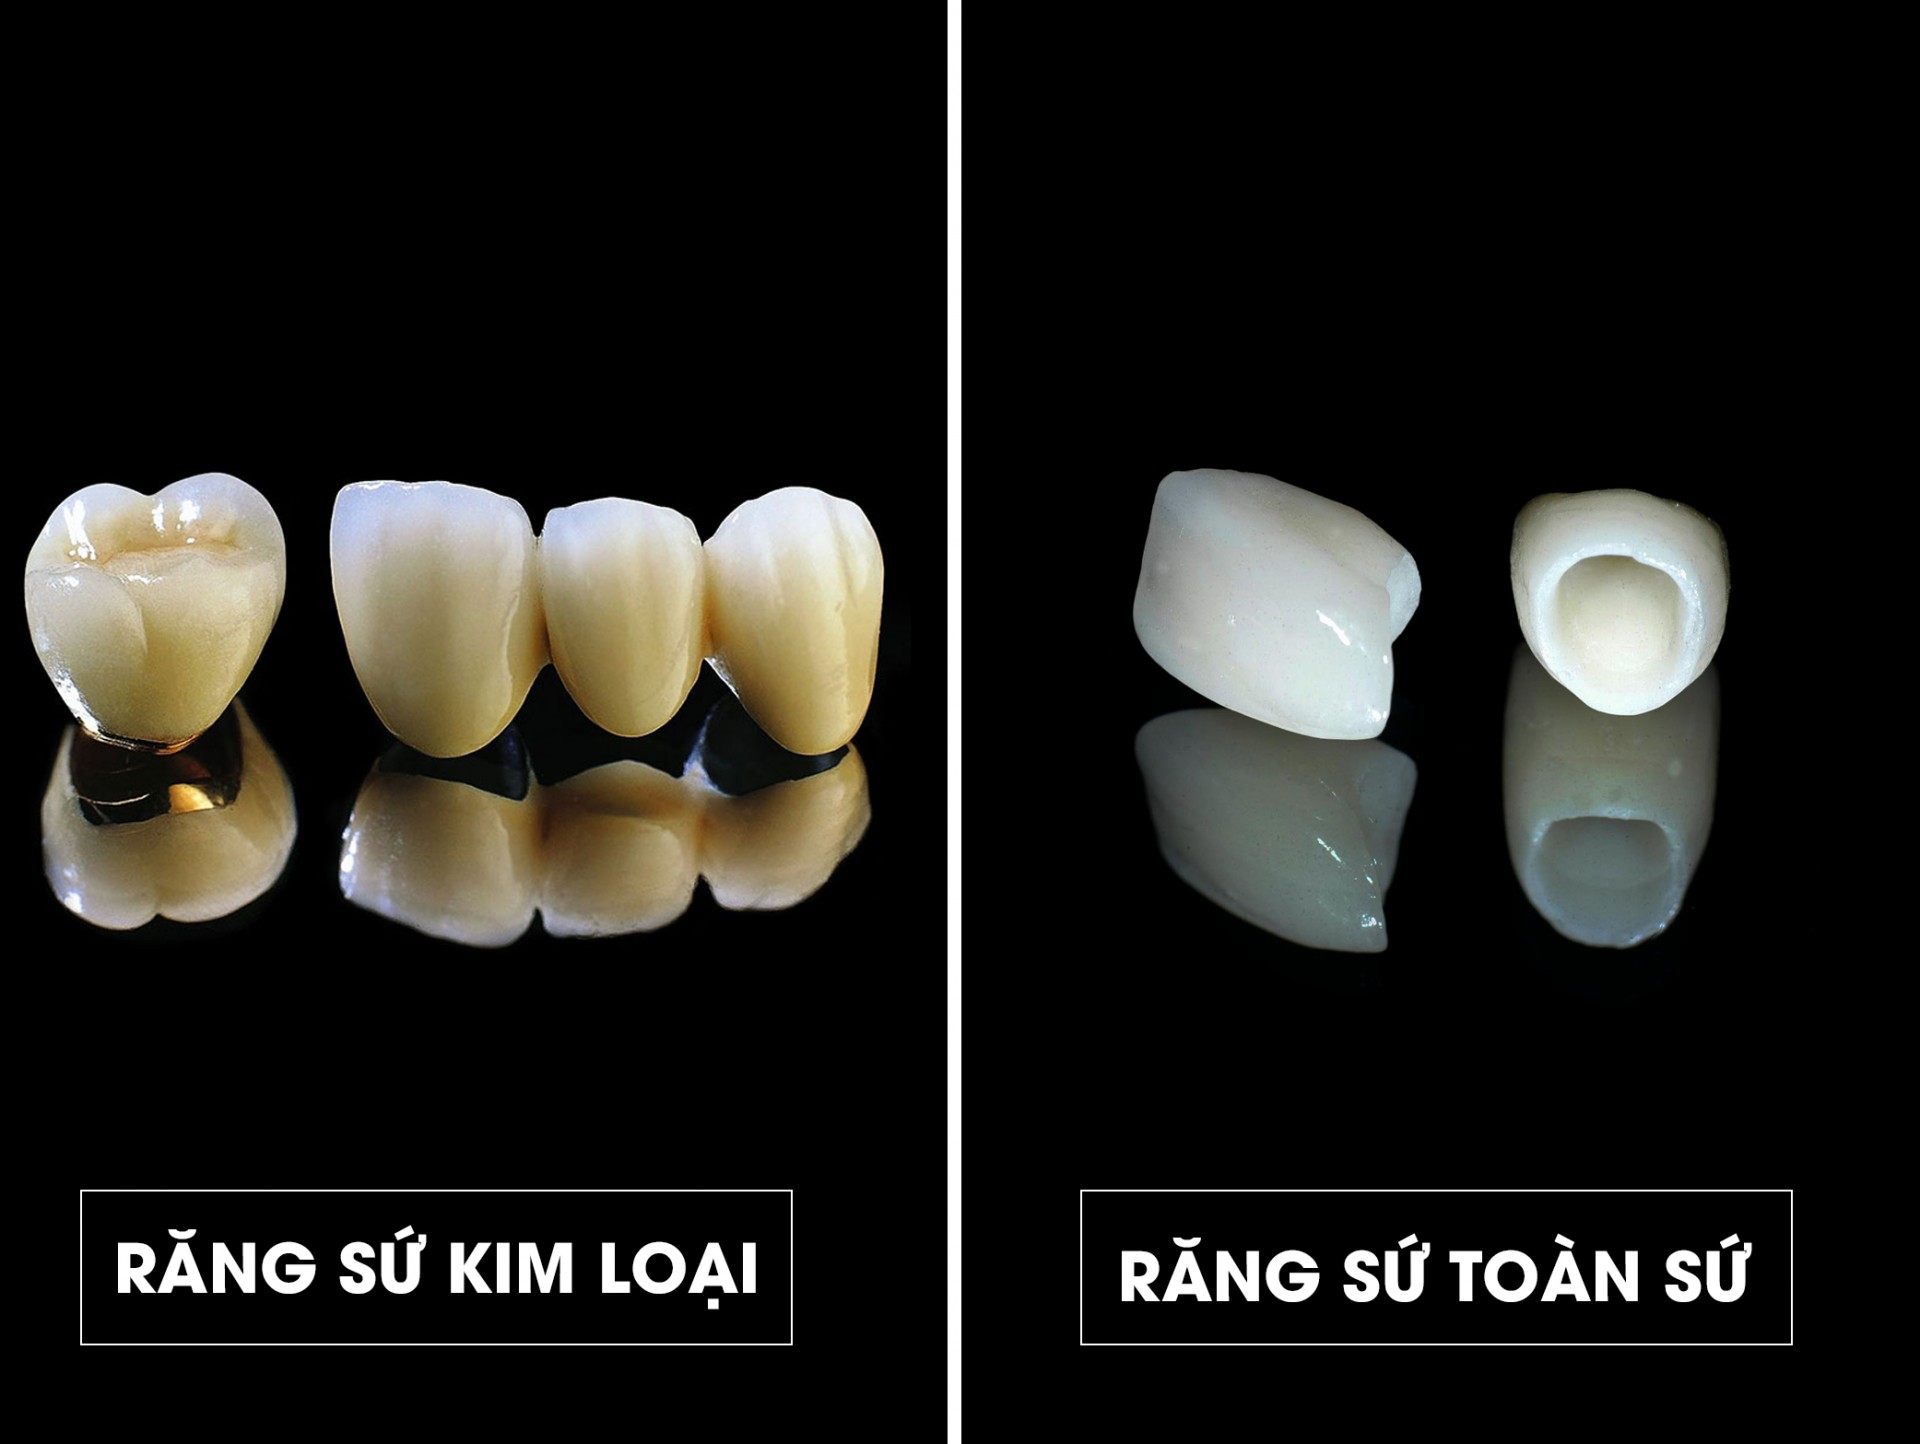 Vật liệu sử dụng răng sứ được chia thành 2 loại: răng sứ kim loại và răng toàn sứ